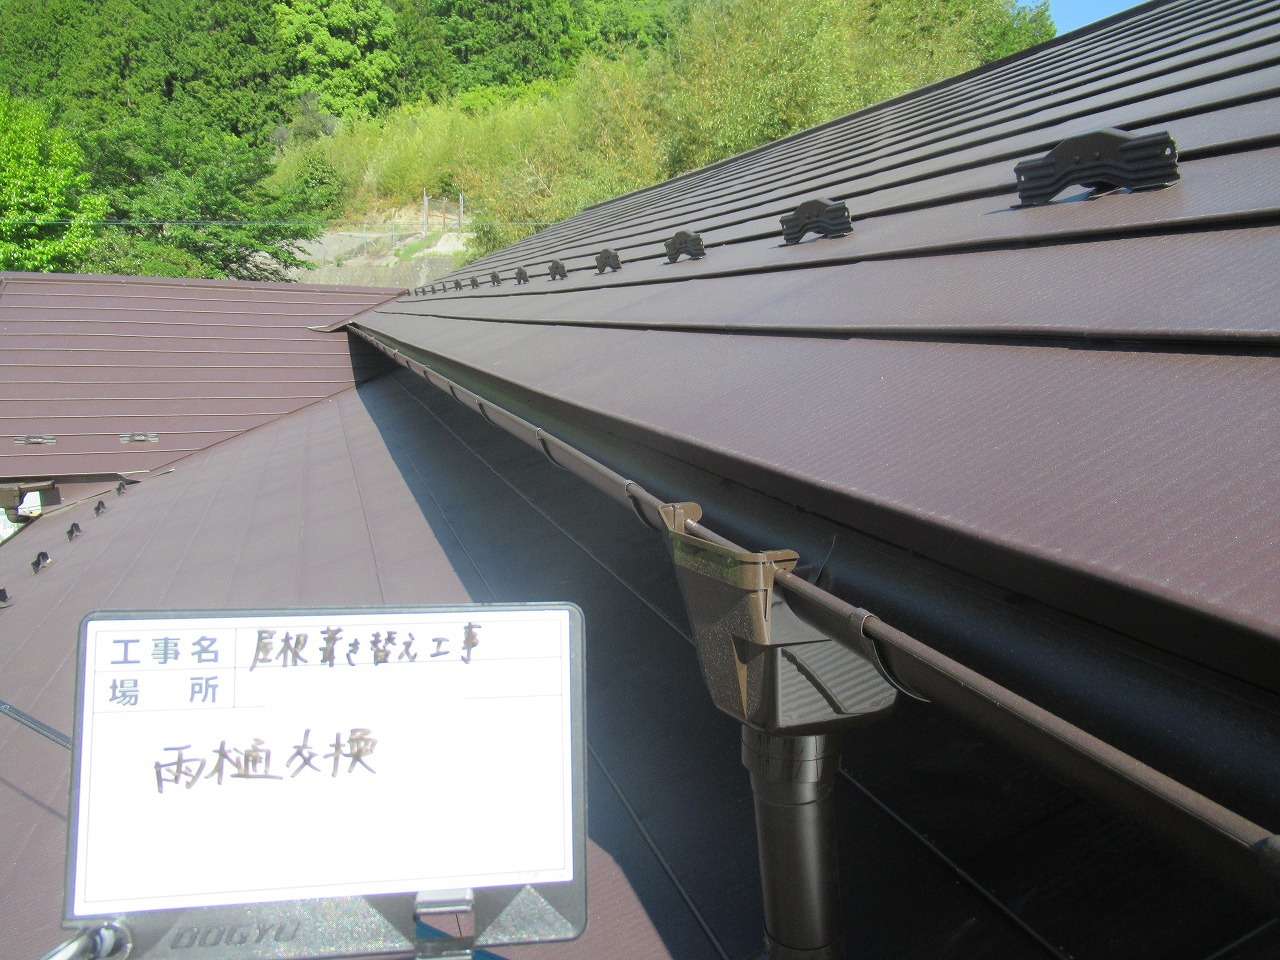 韮崎市で劣化した軒樋と竪樋の交換工事を行いました